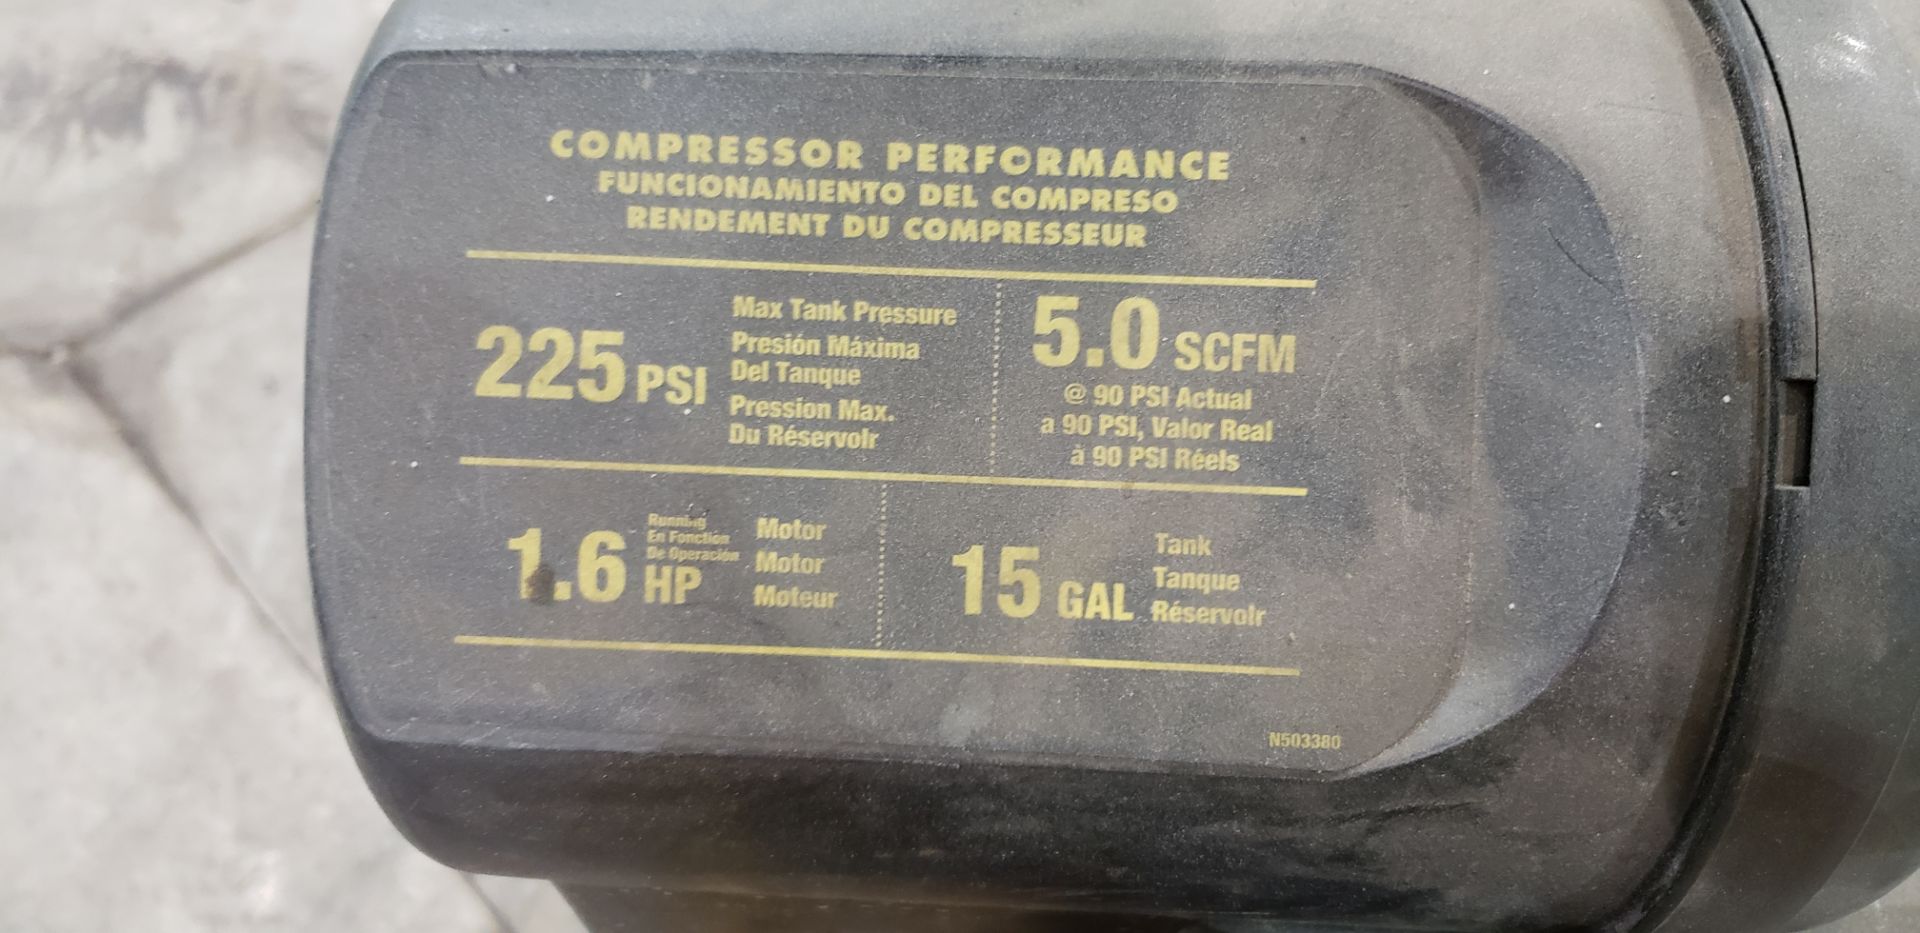 DeWalt D55168 HD 1.6HP Portable Compressor - Image 2 of 3